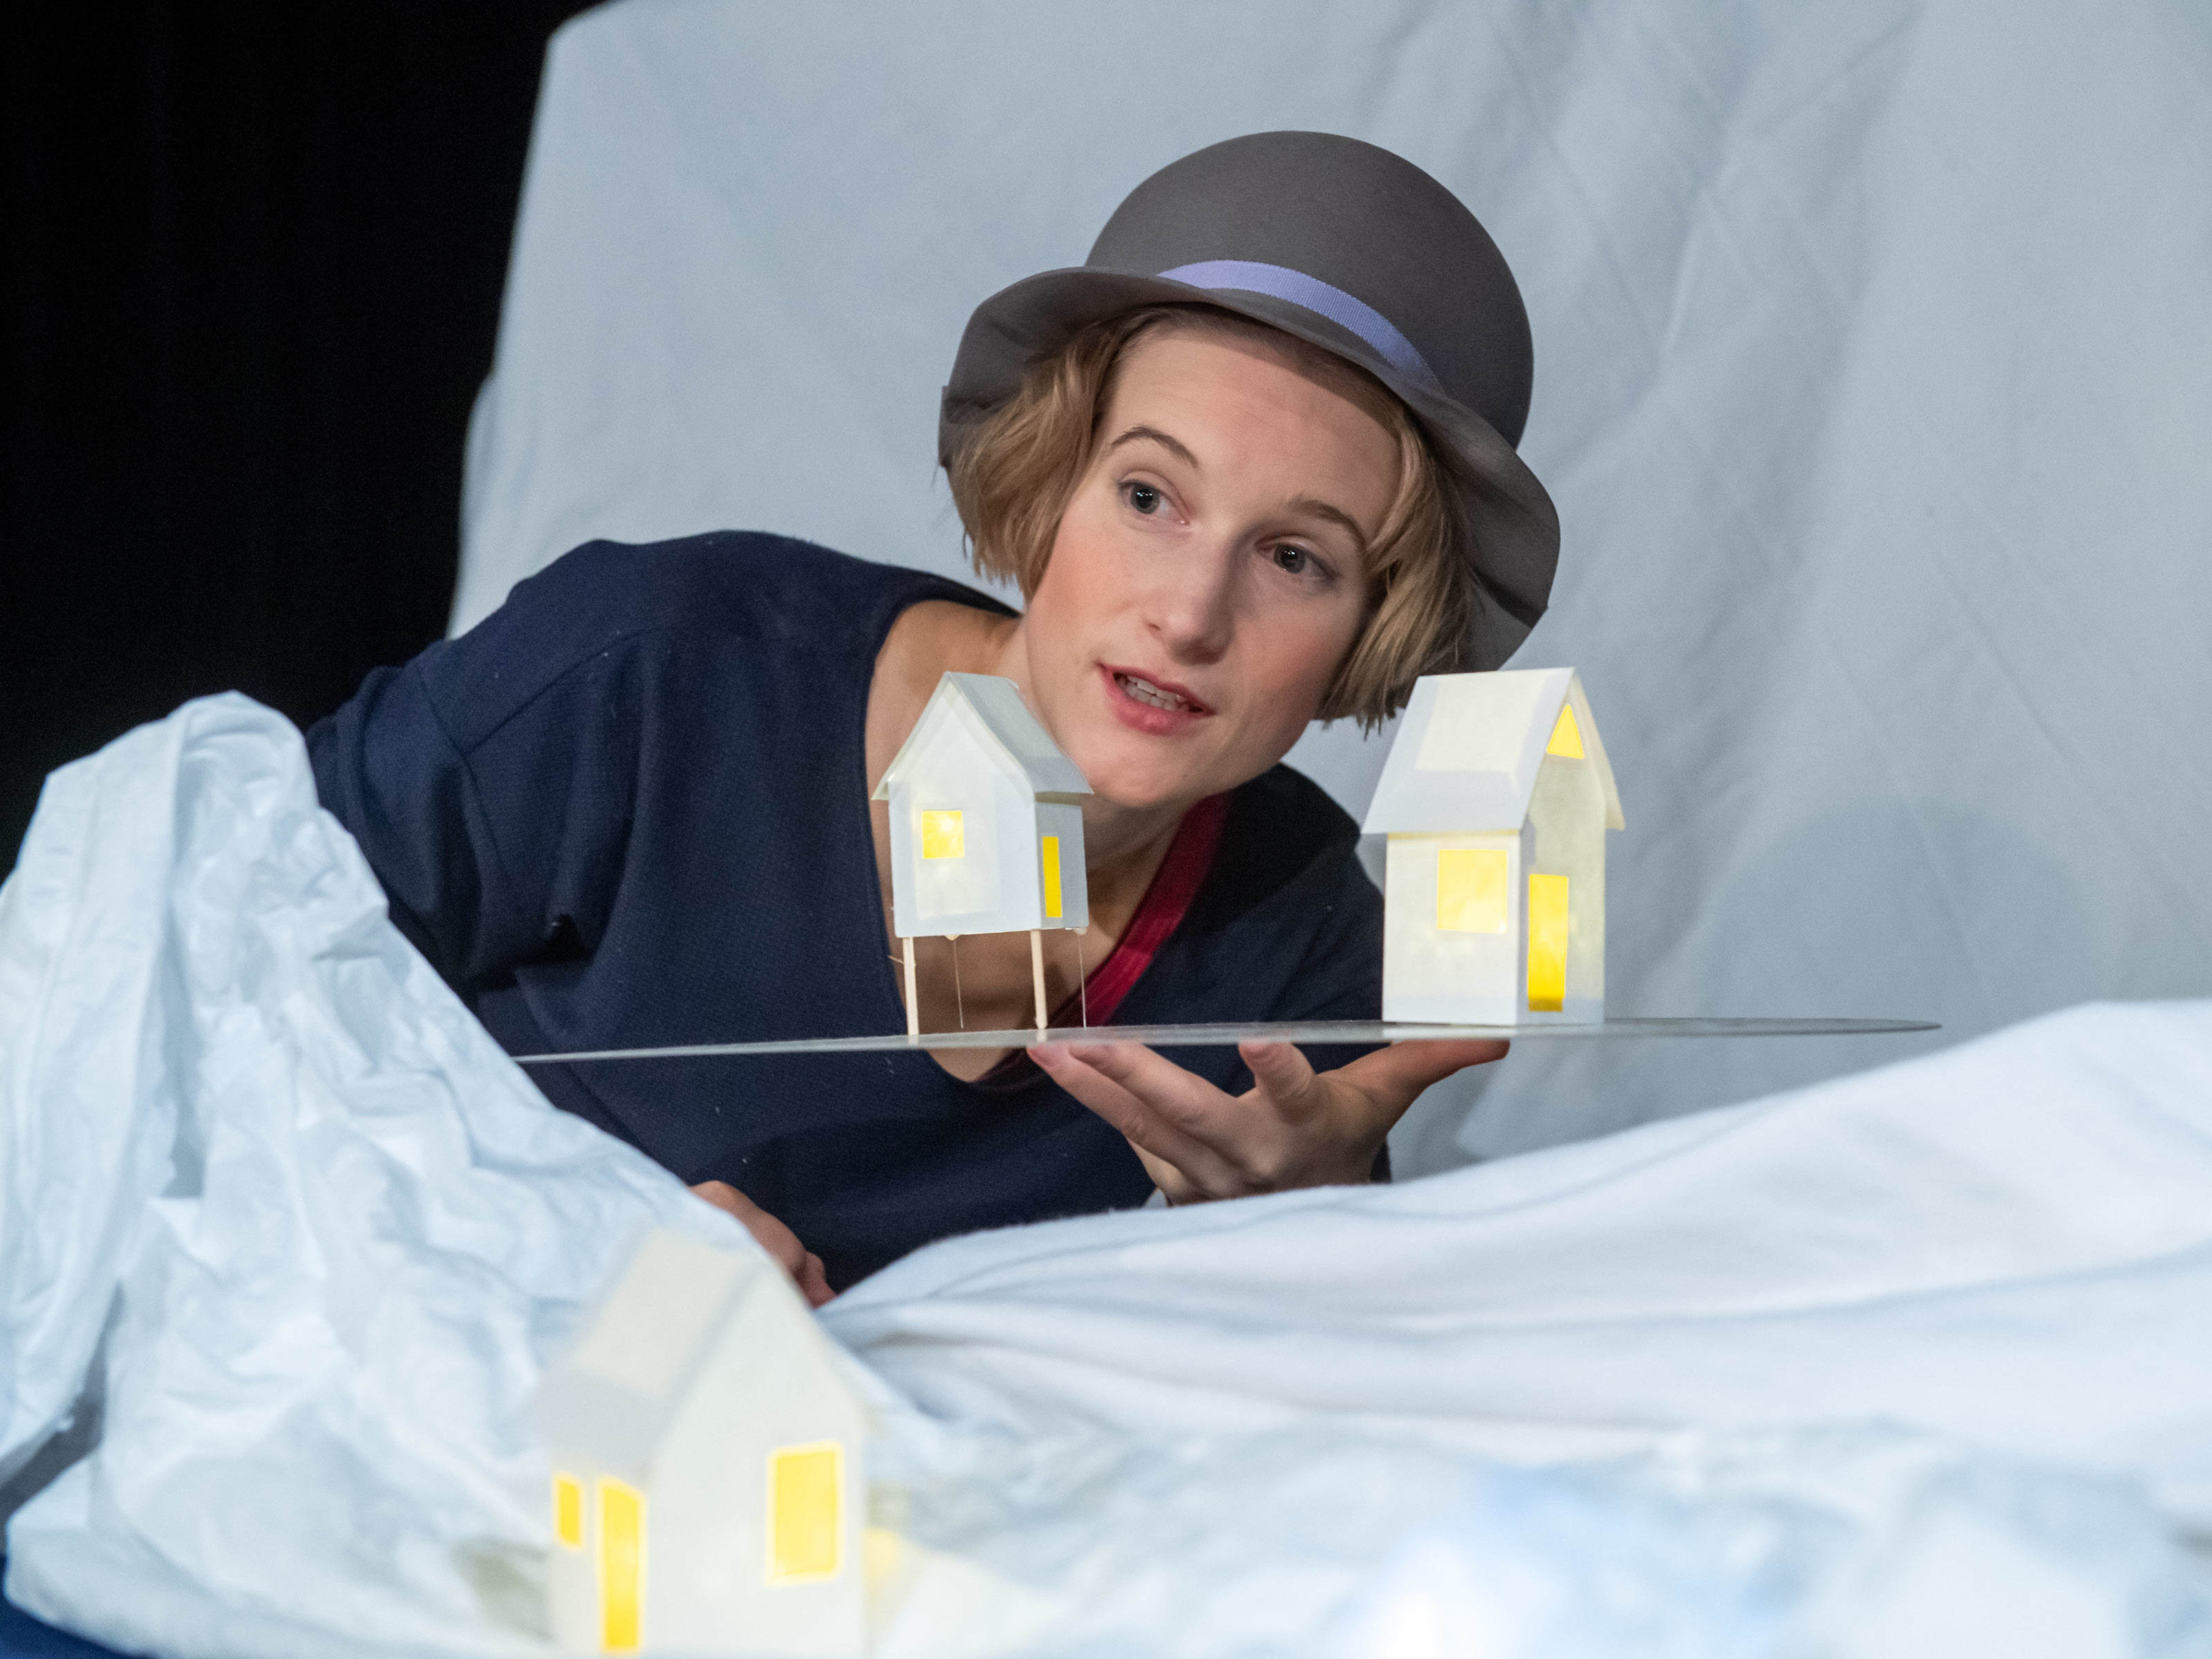 Figurenspielerin Miriam Hesse steht mit grauem Hut in einer verschneiten Landschaft und hält zwei kleine Häuschen auf einer Platte in der Hand. Aus den Häuschen scheint warmes Licht.